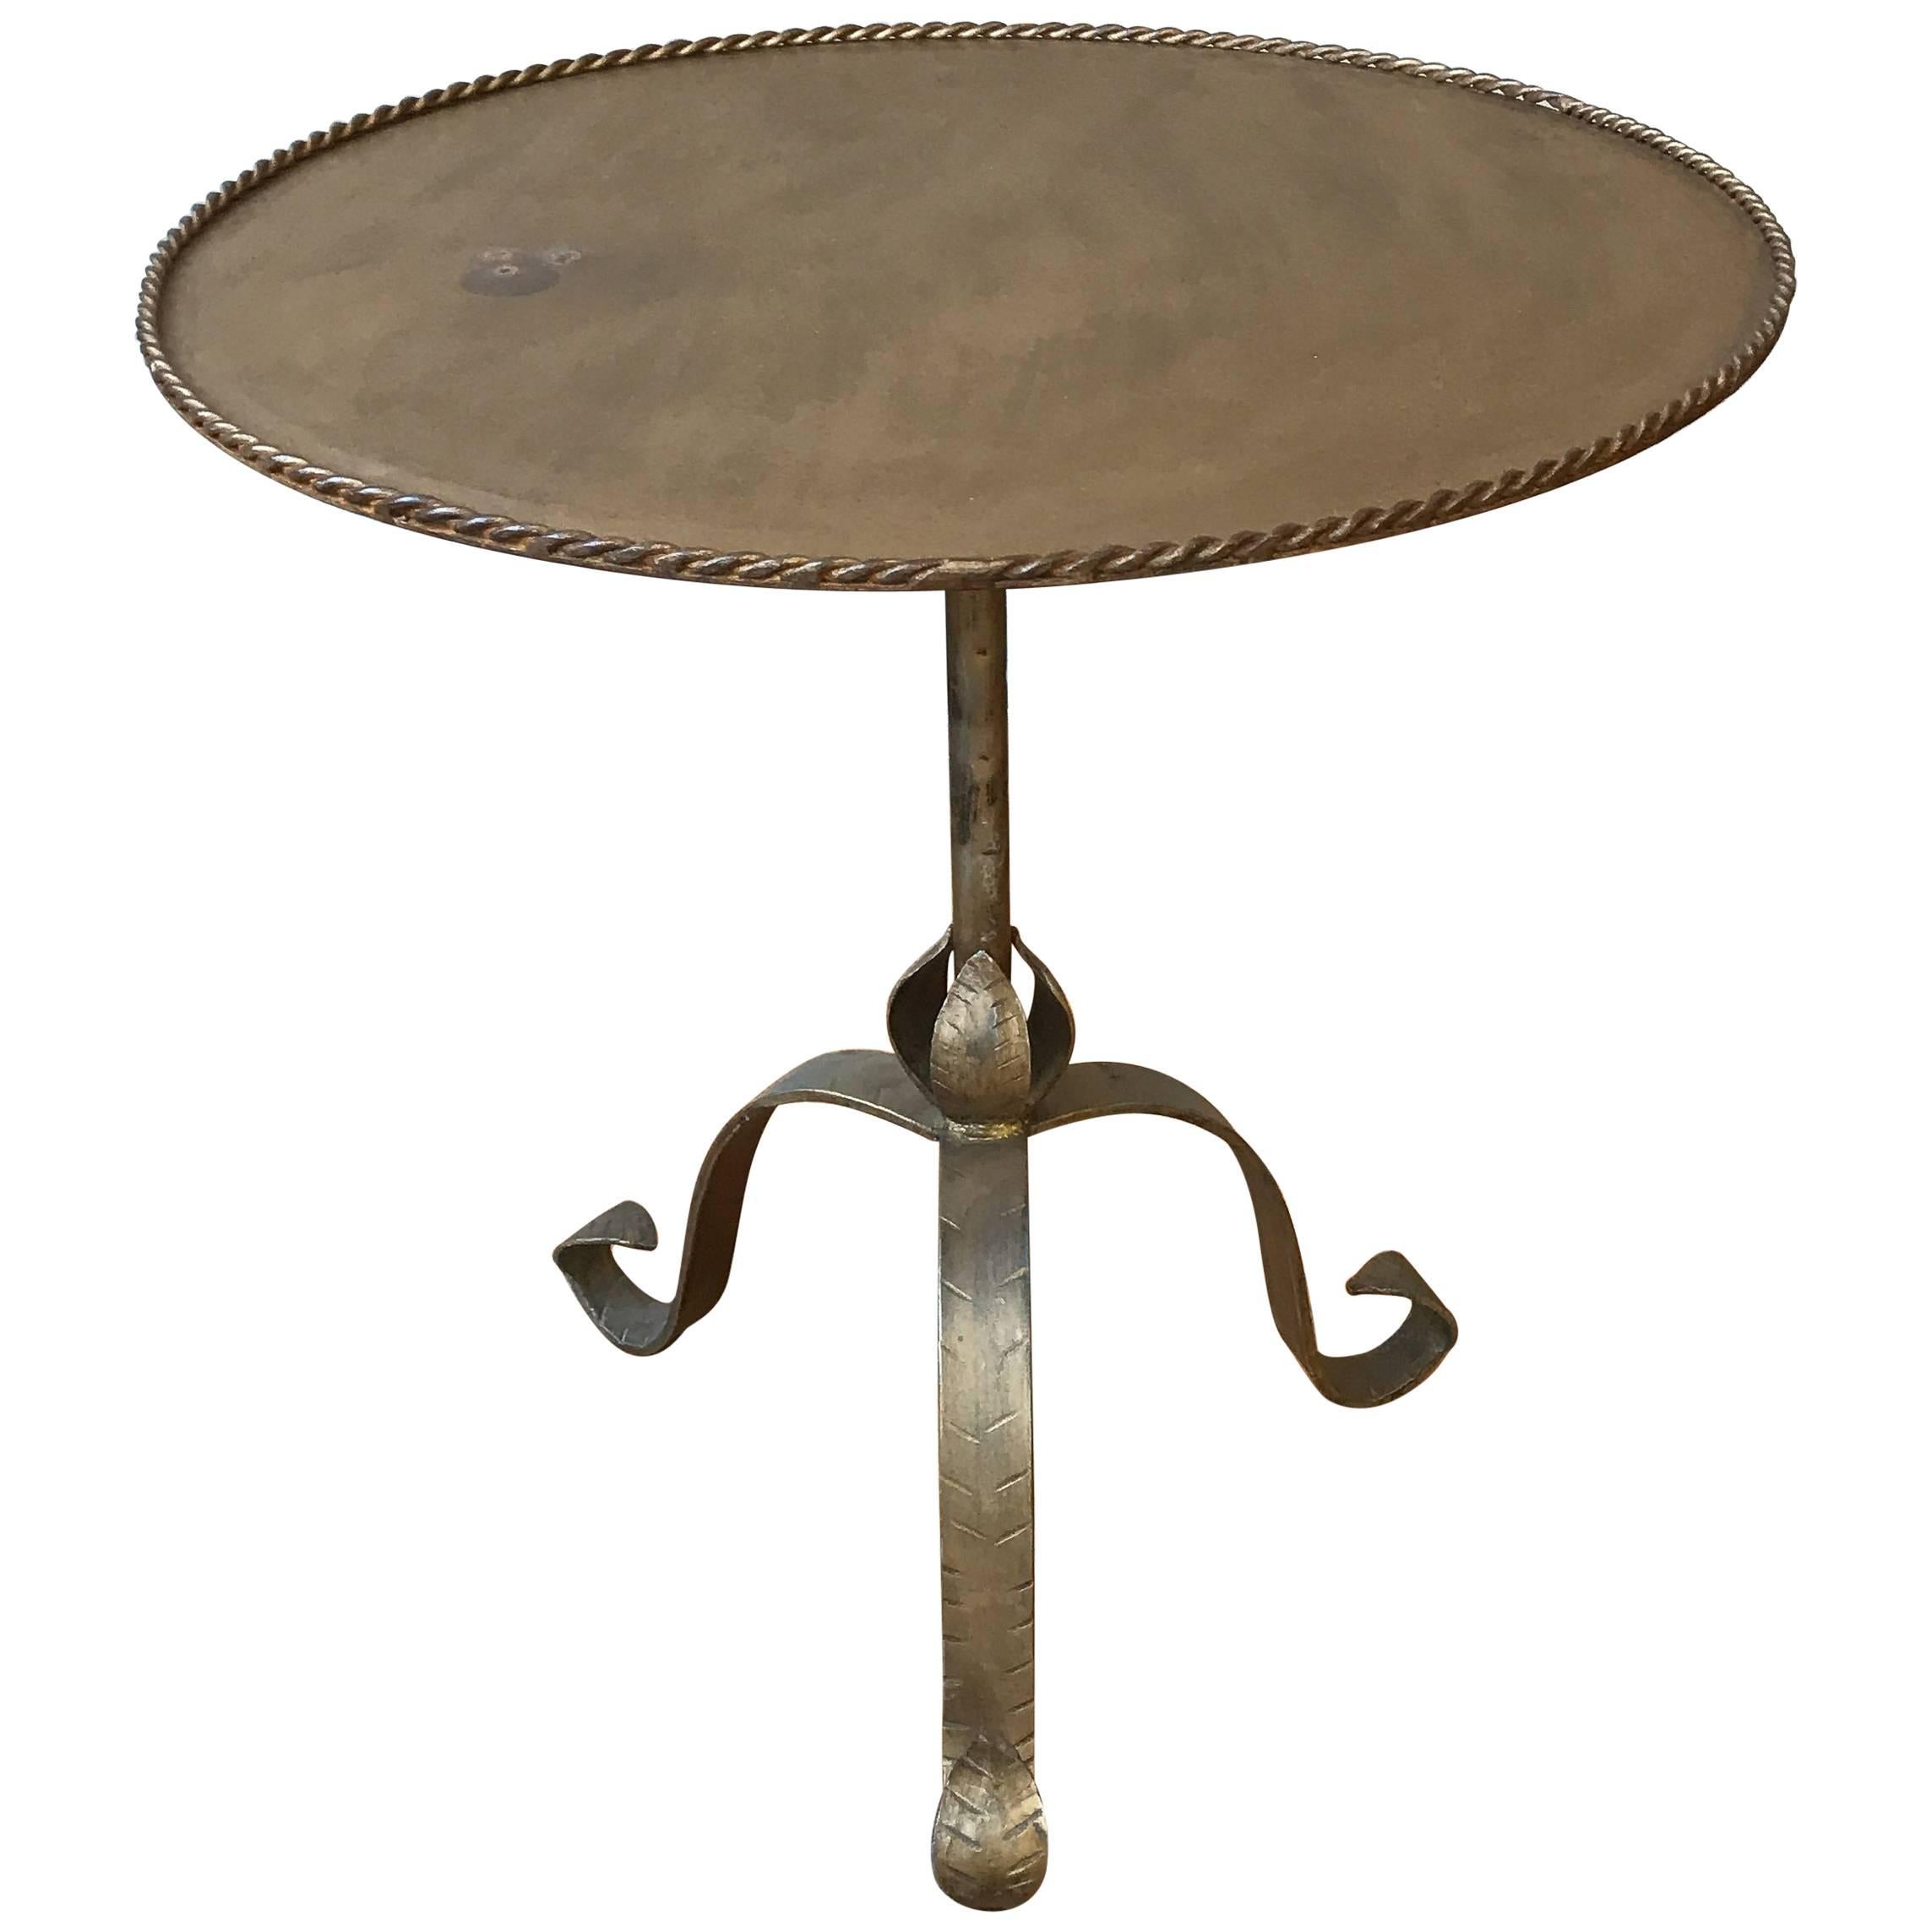 Table d'extrémité en fer doré espagnol avec base tripode